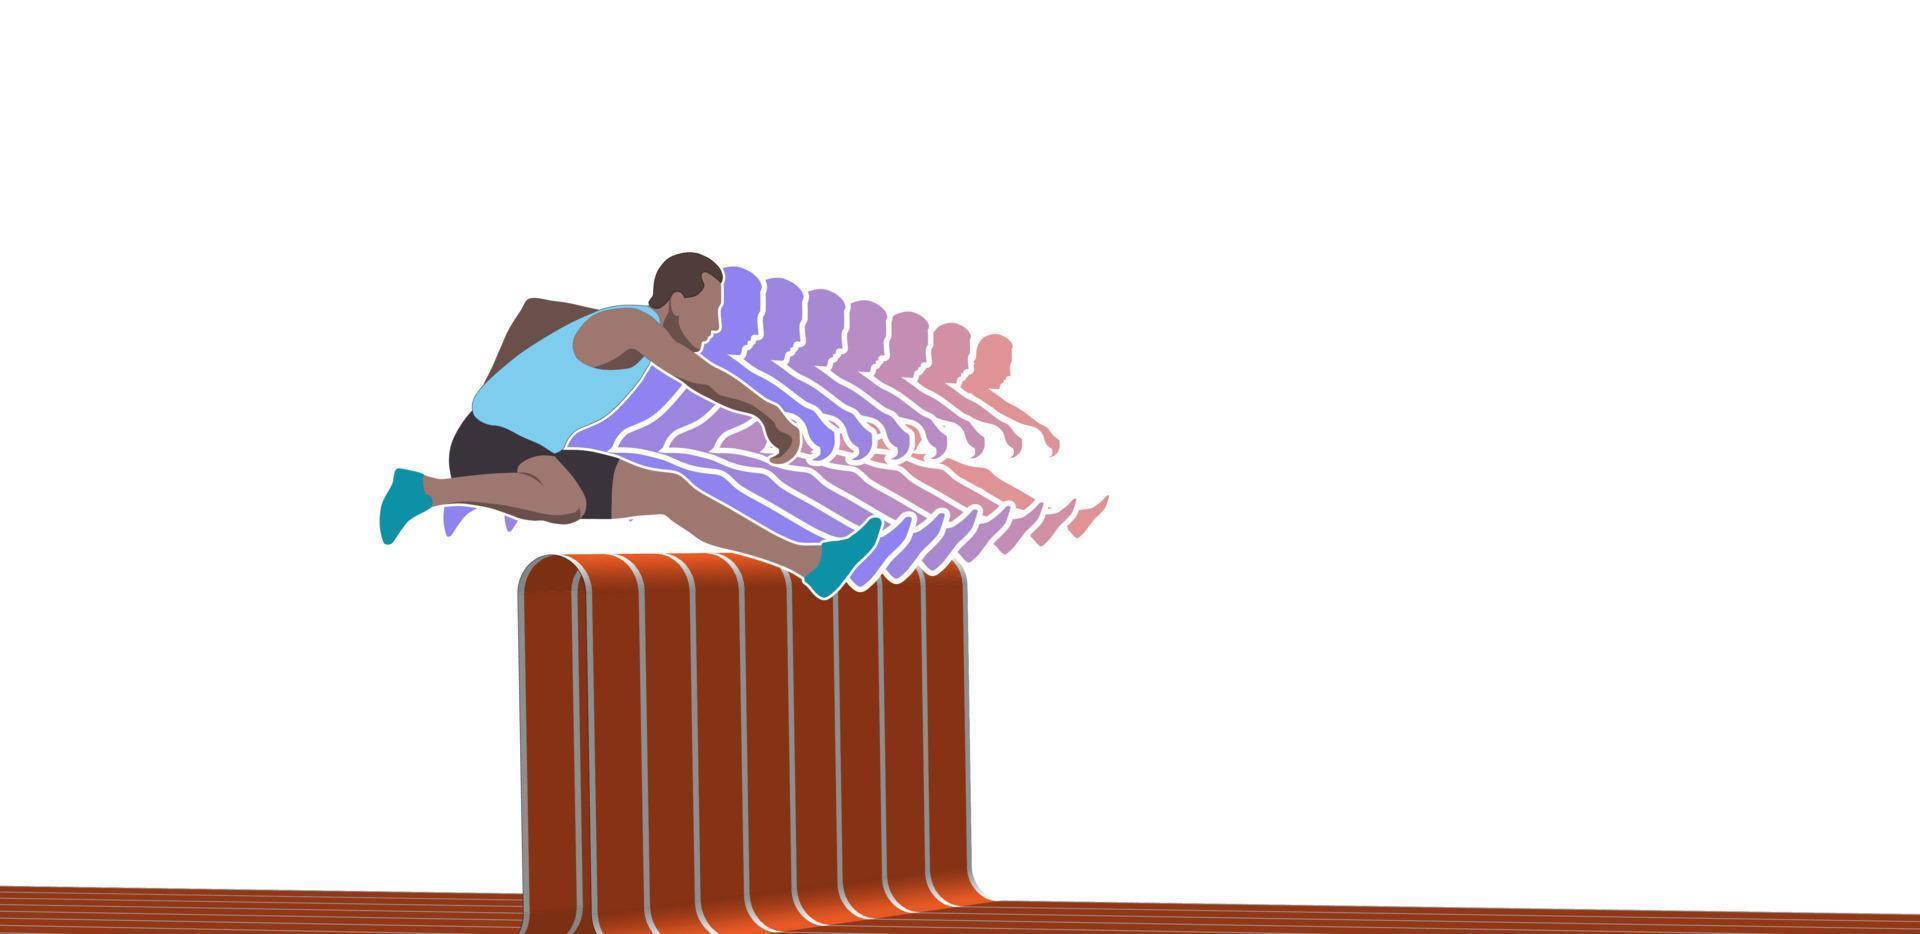 manlig idrottare hoppa över ett abstrakt hinder av löparbanan. vektor